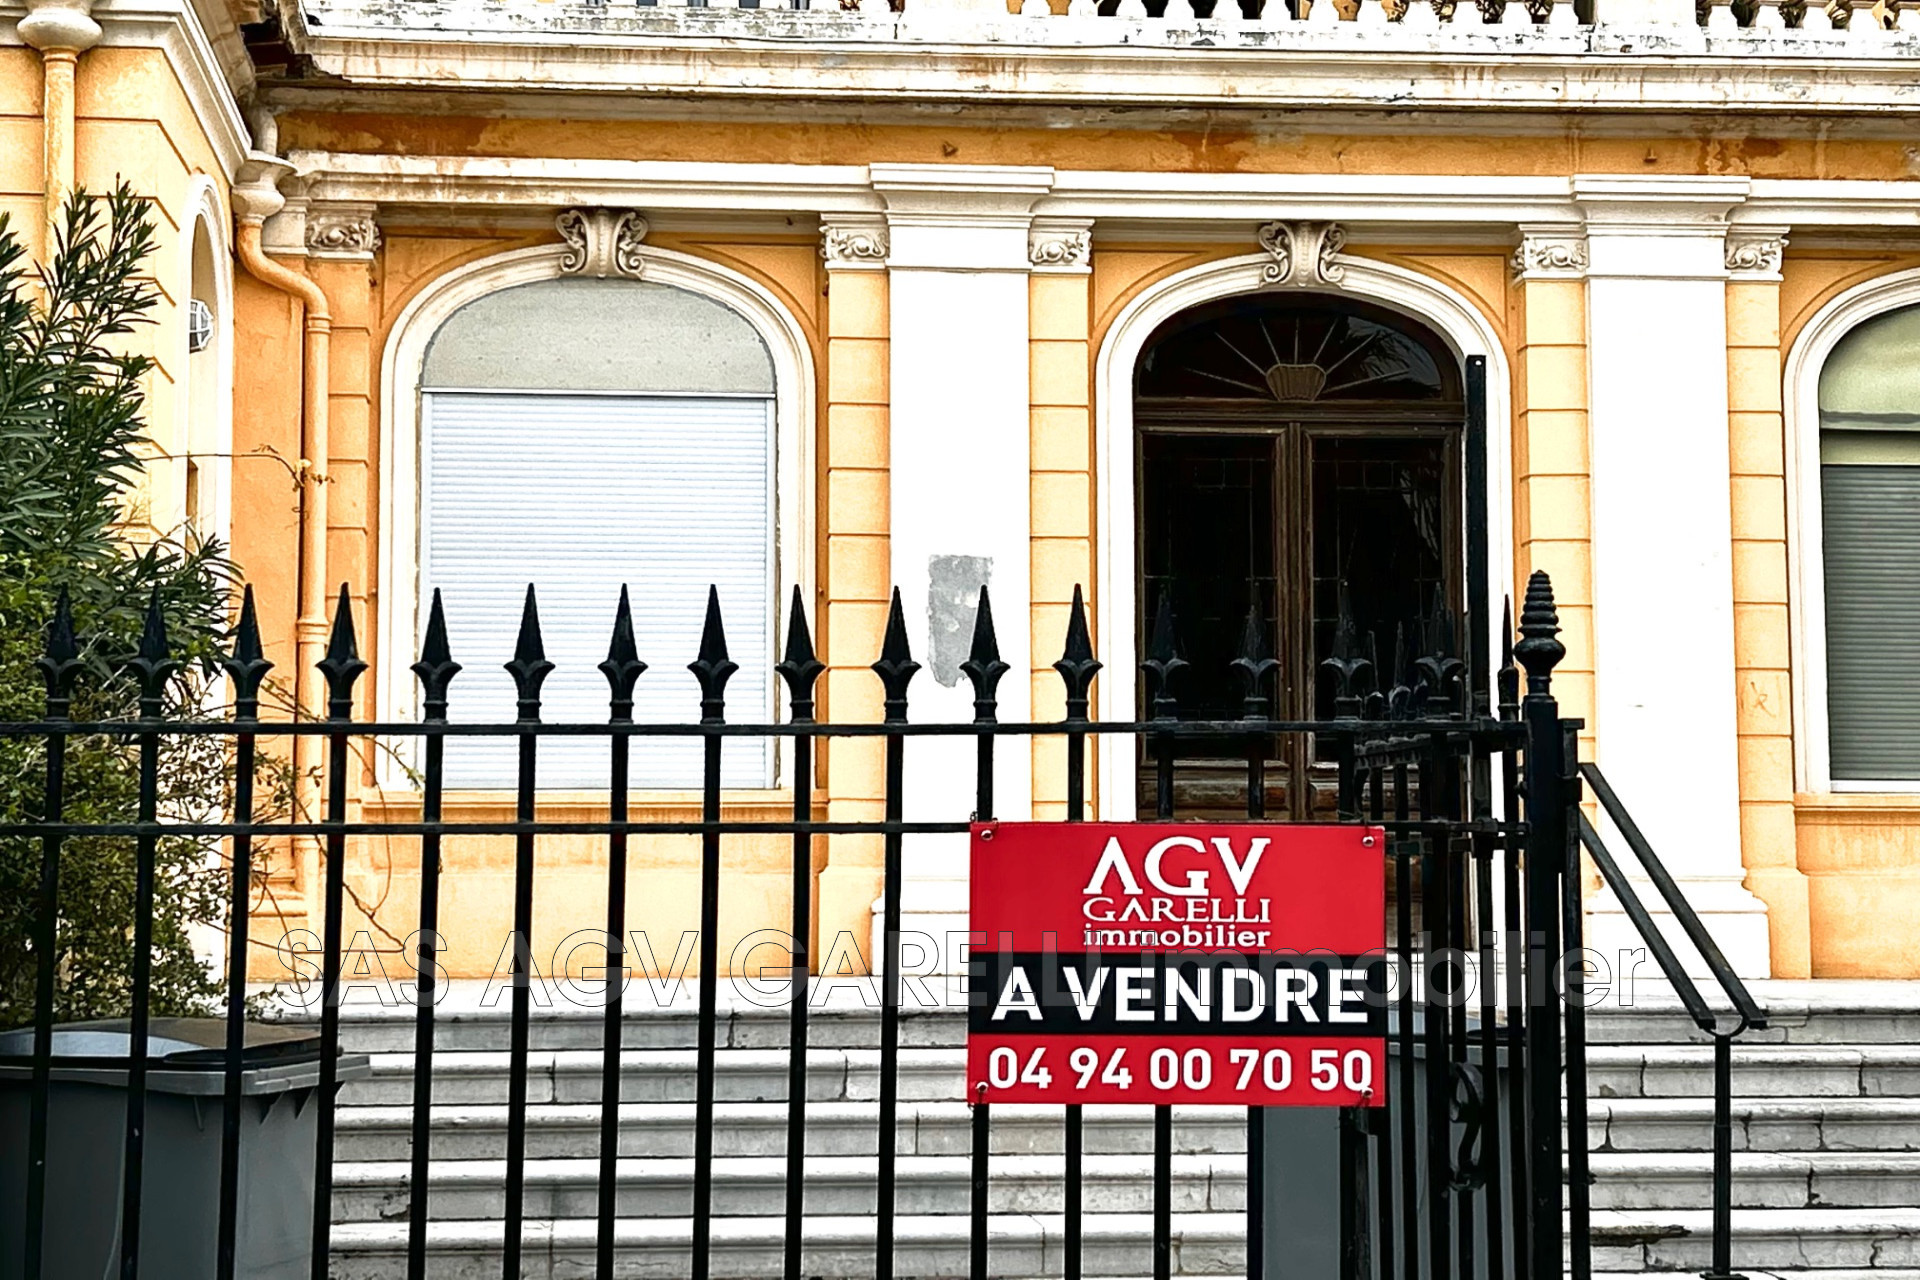 Vente Appartement 27m² à Hyères (83400) - Agv Garelli Immobilier